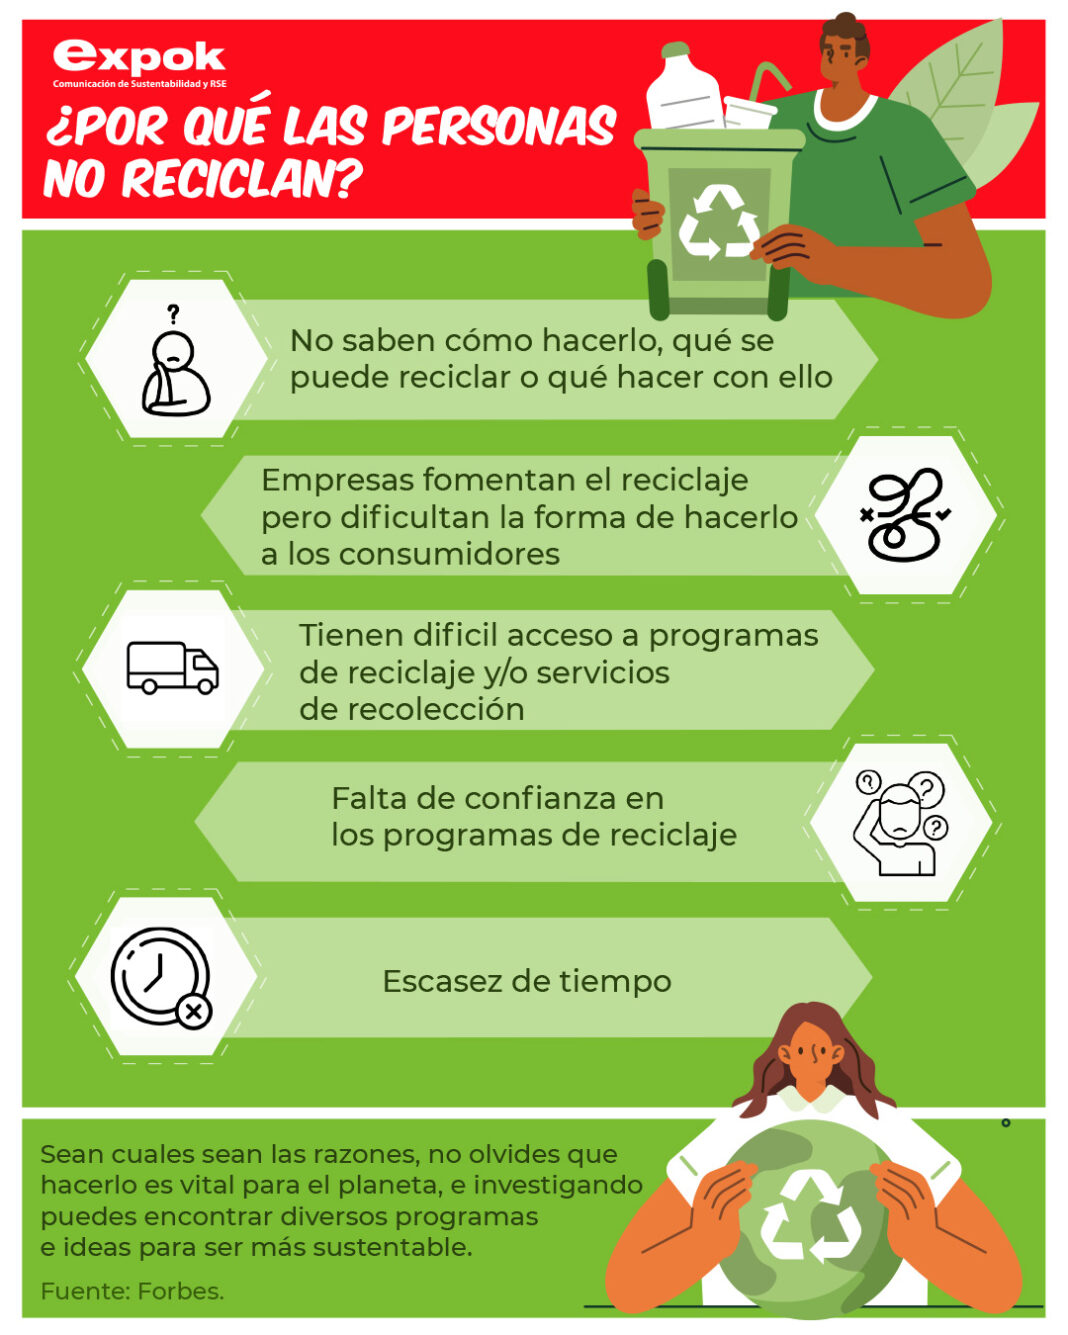 Por qué las personas no reciclan